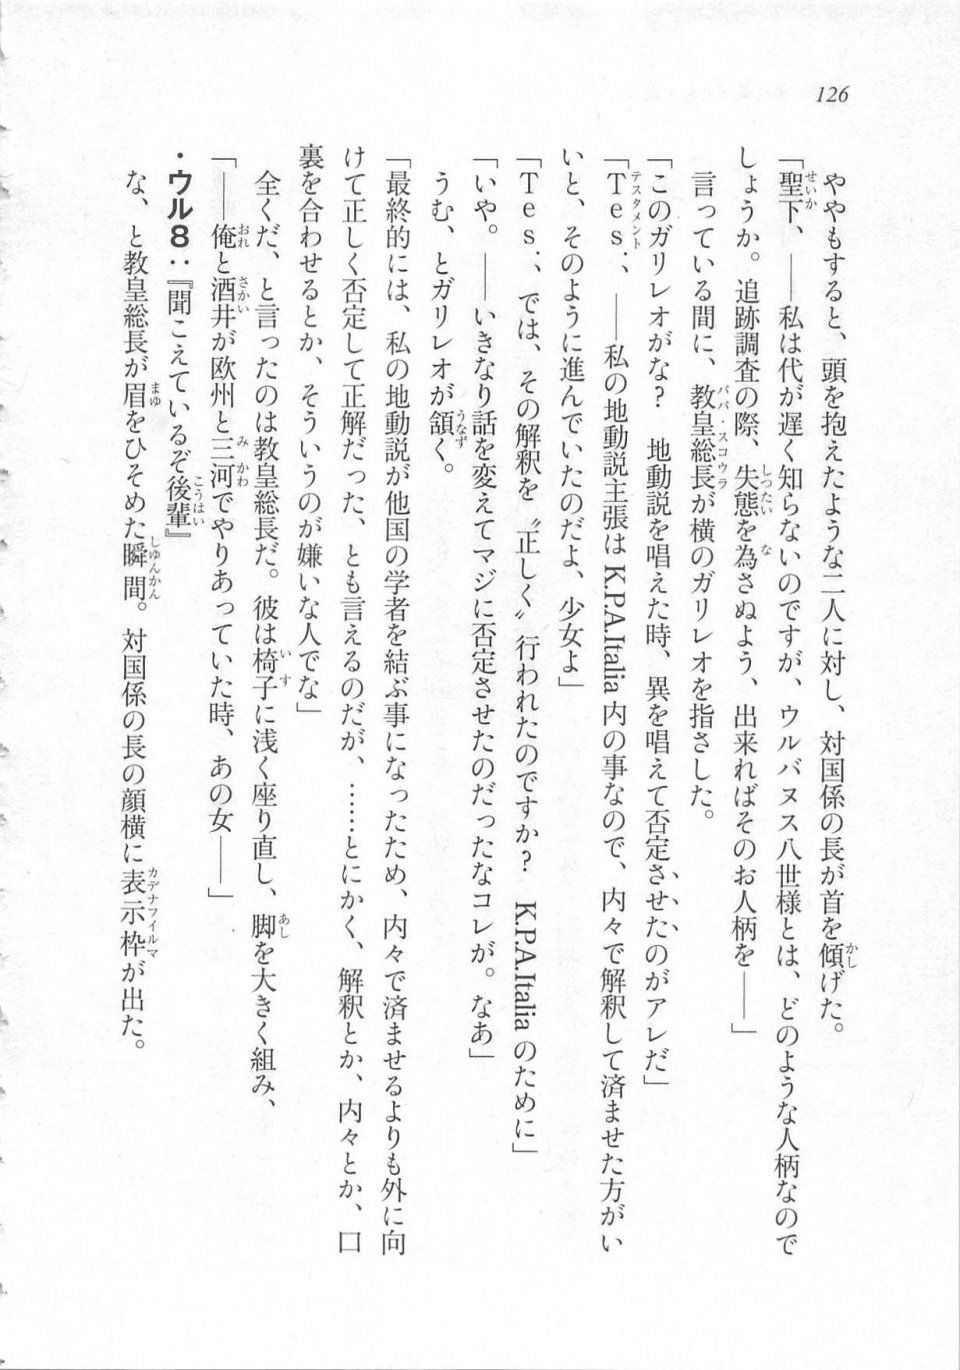 Kyoukai Senjou no Horizon LN Sidestory Vol 3 - Photo #130